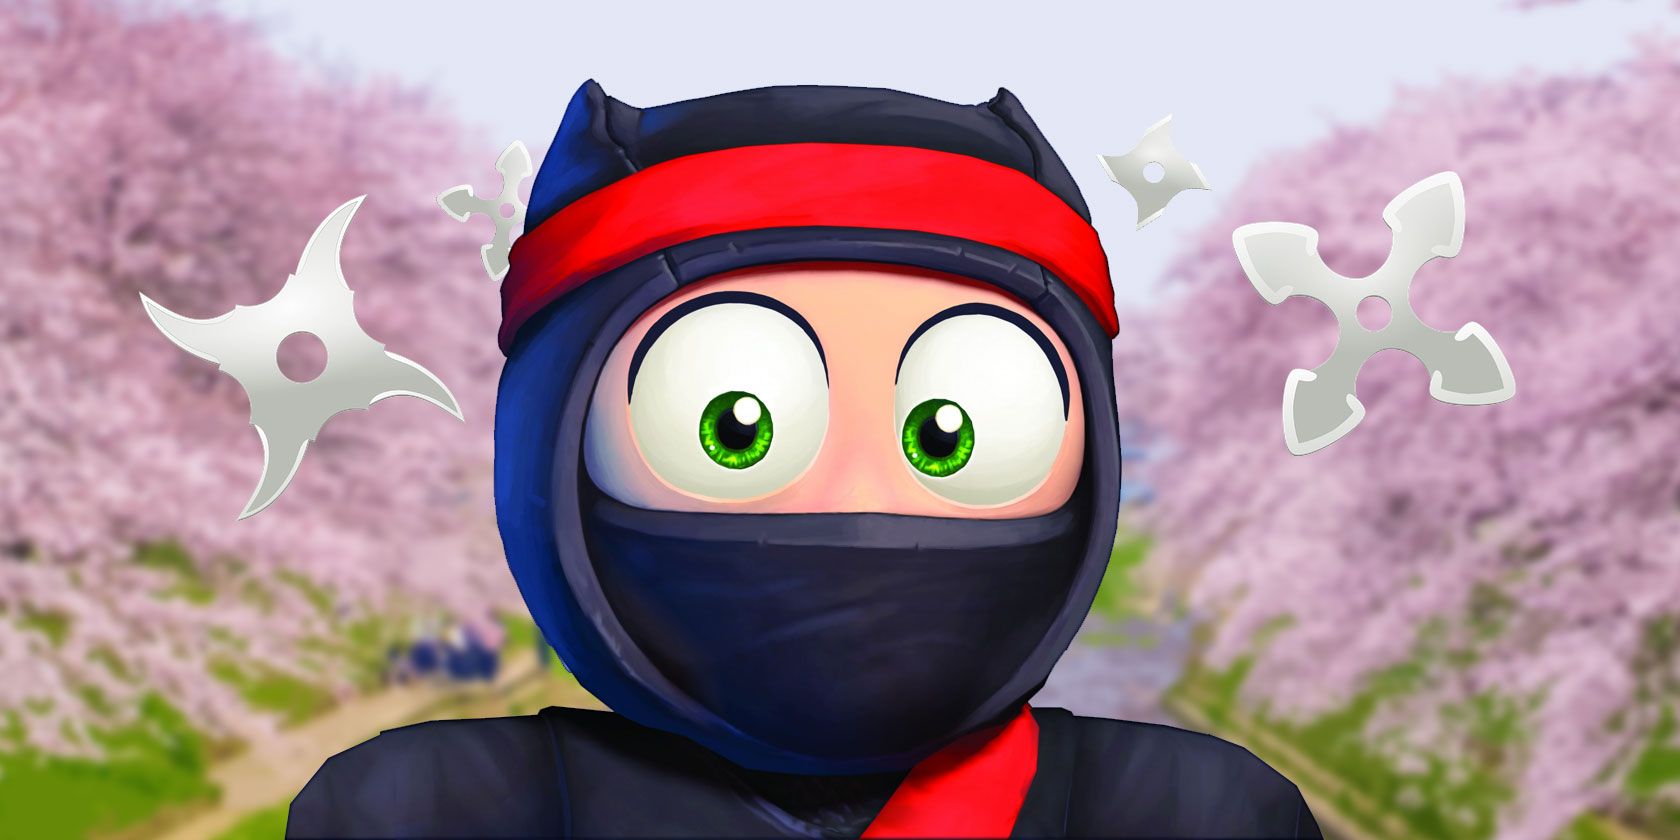 cartoon ninja games